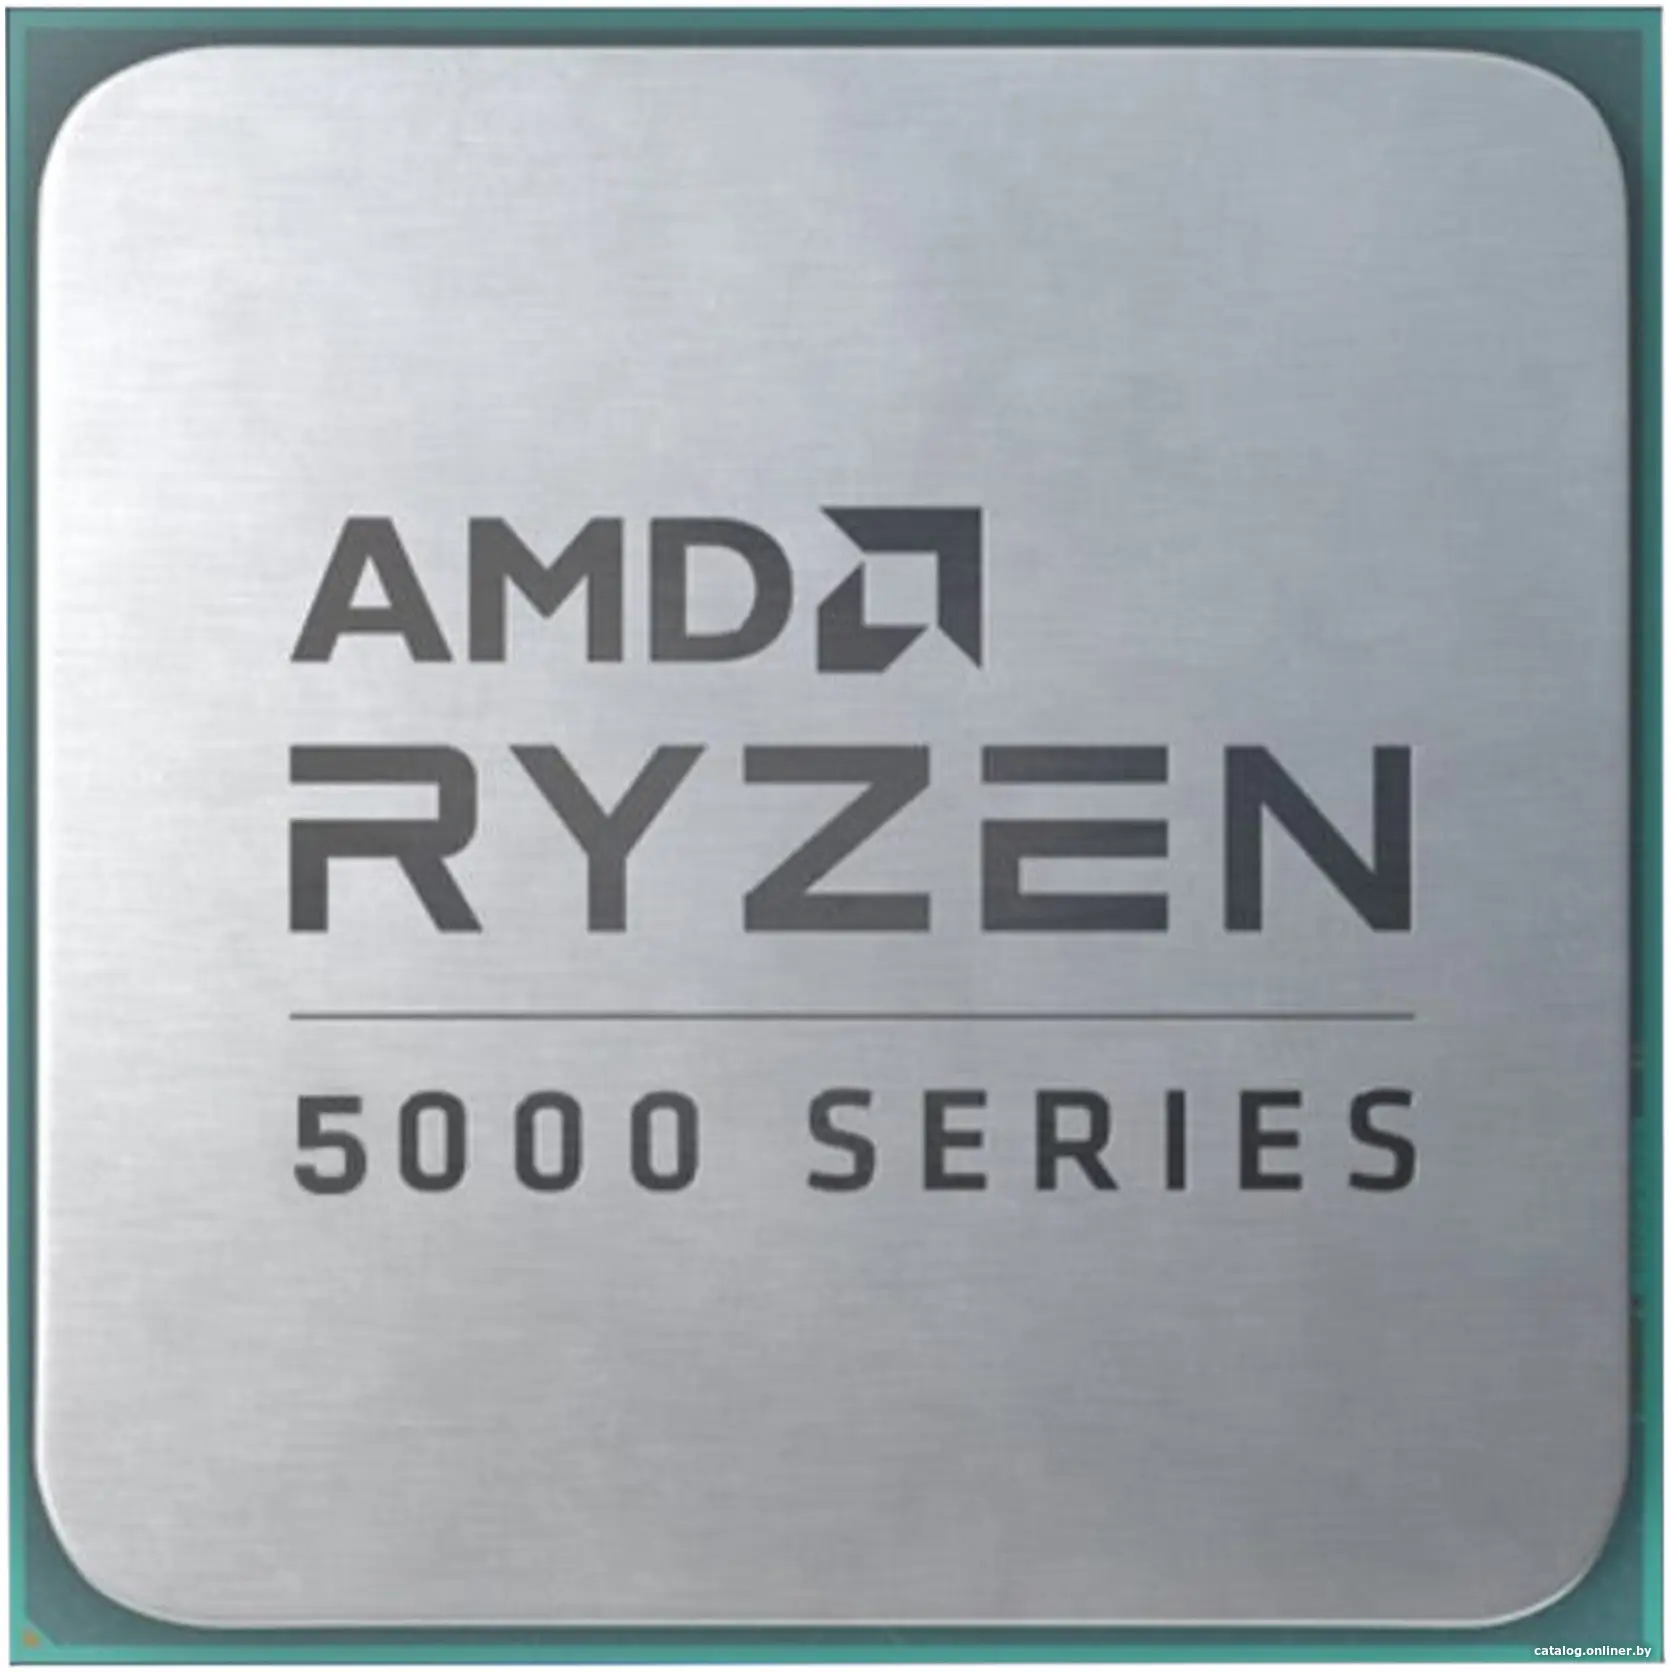 Купить AMD RYZEN 5 5600GT OEM (Cezanne, 7nm, C6/T12, Base 3,60GHz, Turbo 4,60GHz, Vega 7, L3 16Mb, TDP 65W, SAM4), цена, опт и розница